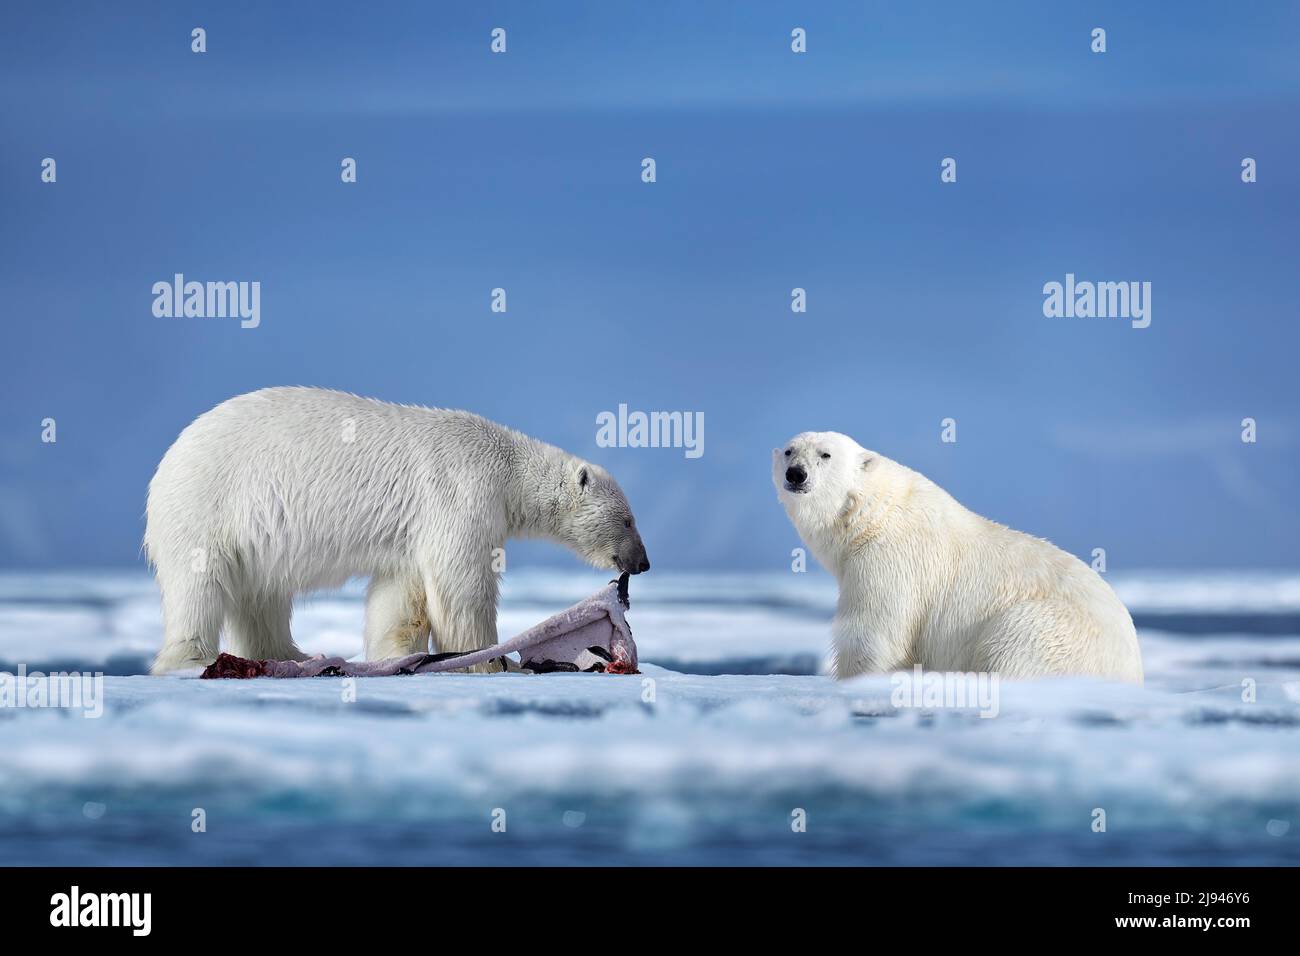 Eisbär auf treibendem Eis mit Schneefütterung an getöteten Robben, Skelett und Blut, Wildtiere Svalbard, Norwegen. Beras mit Karkasse, Wildtiere Natur. Stockfoto